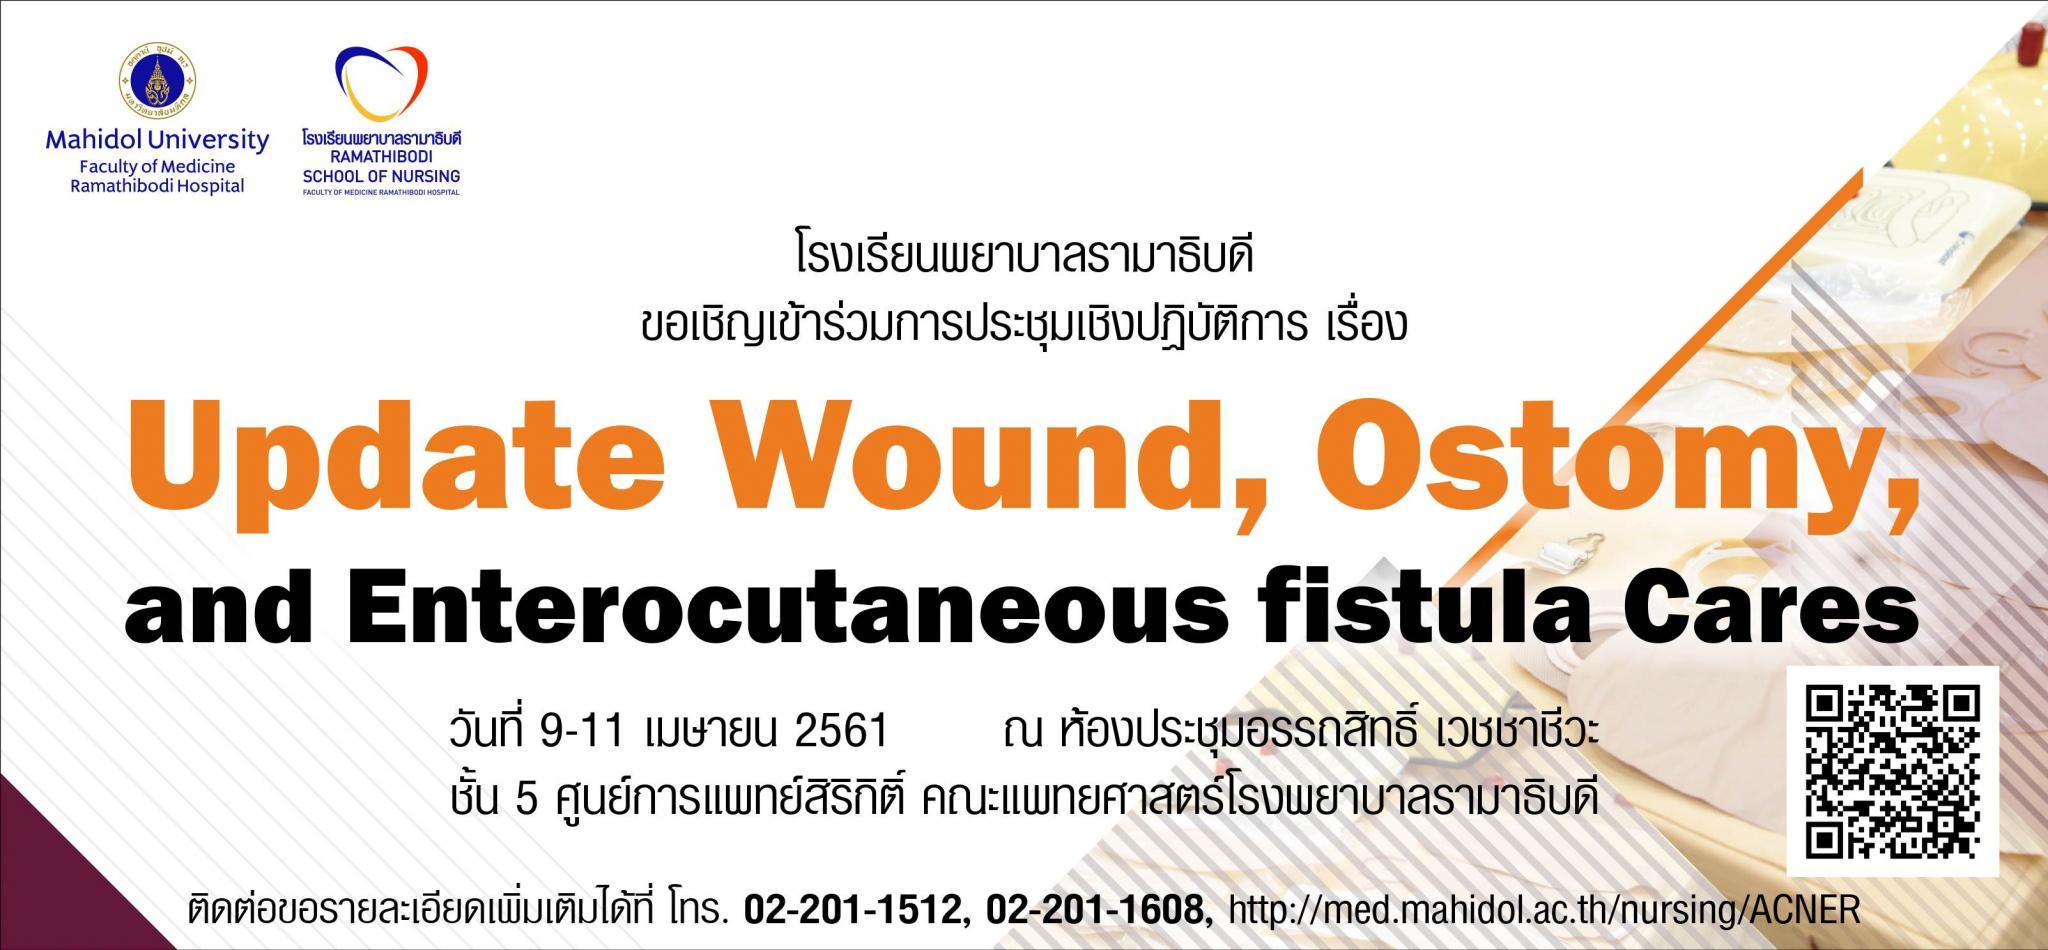 ขอเชิญเข้าร่วมการประชุมเชิงปฏิบัติการ เรื่อง Update Wound, Ostomy, and Enterocutaneous fistula Cares